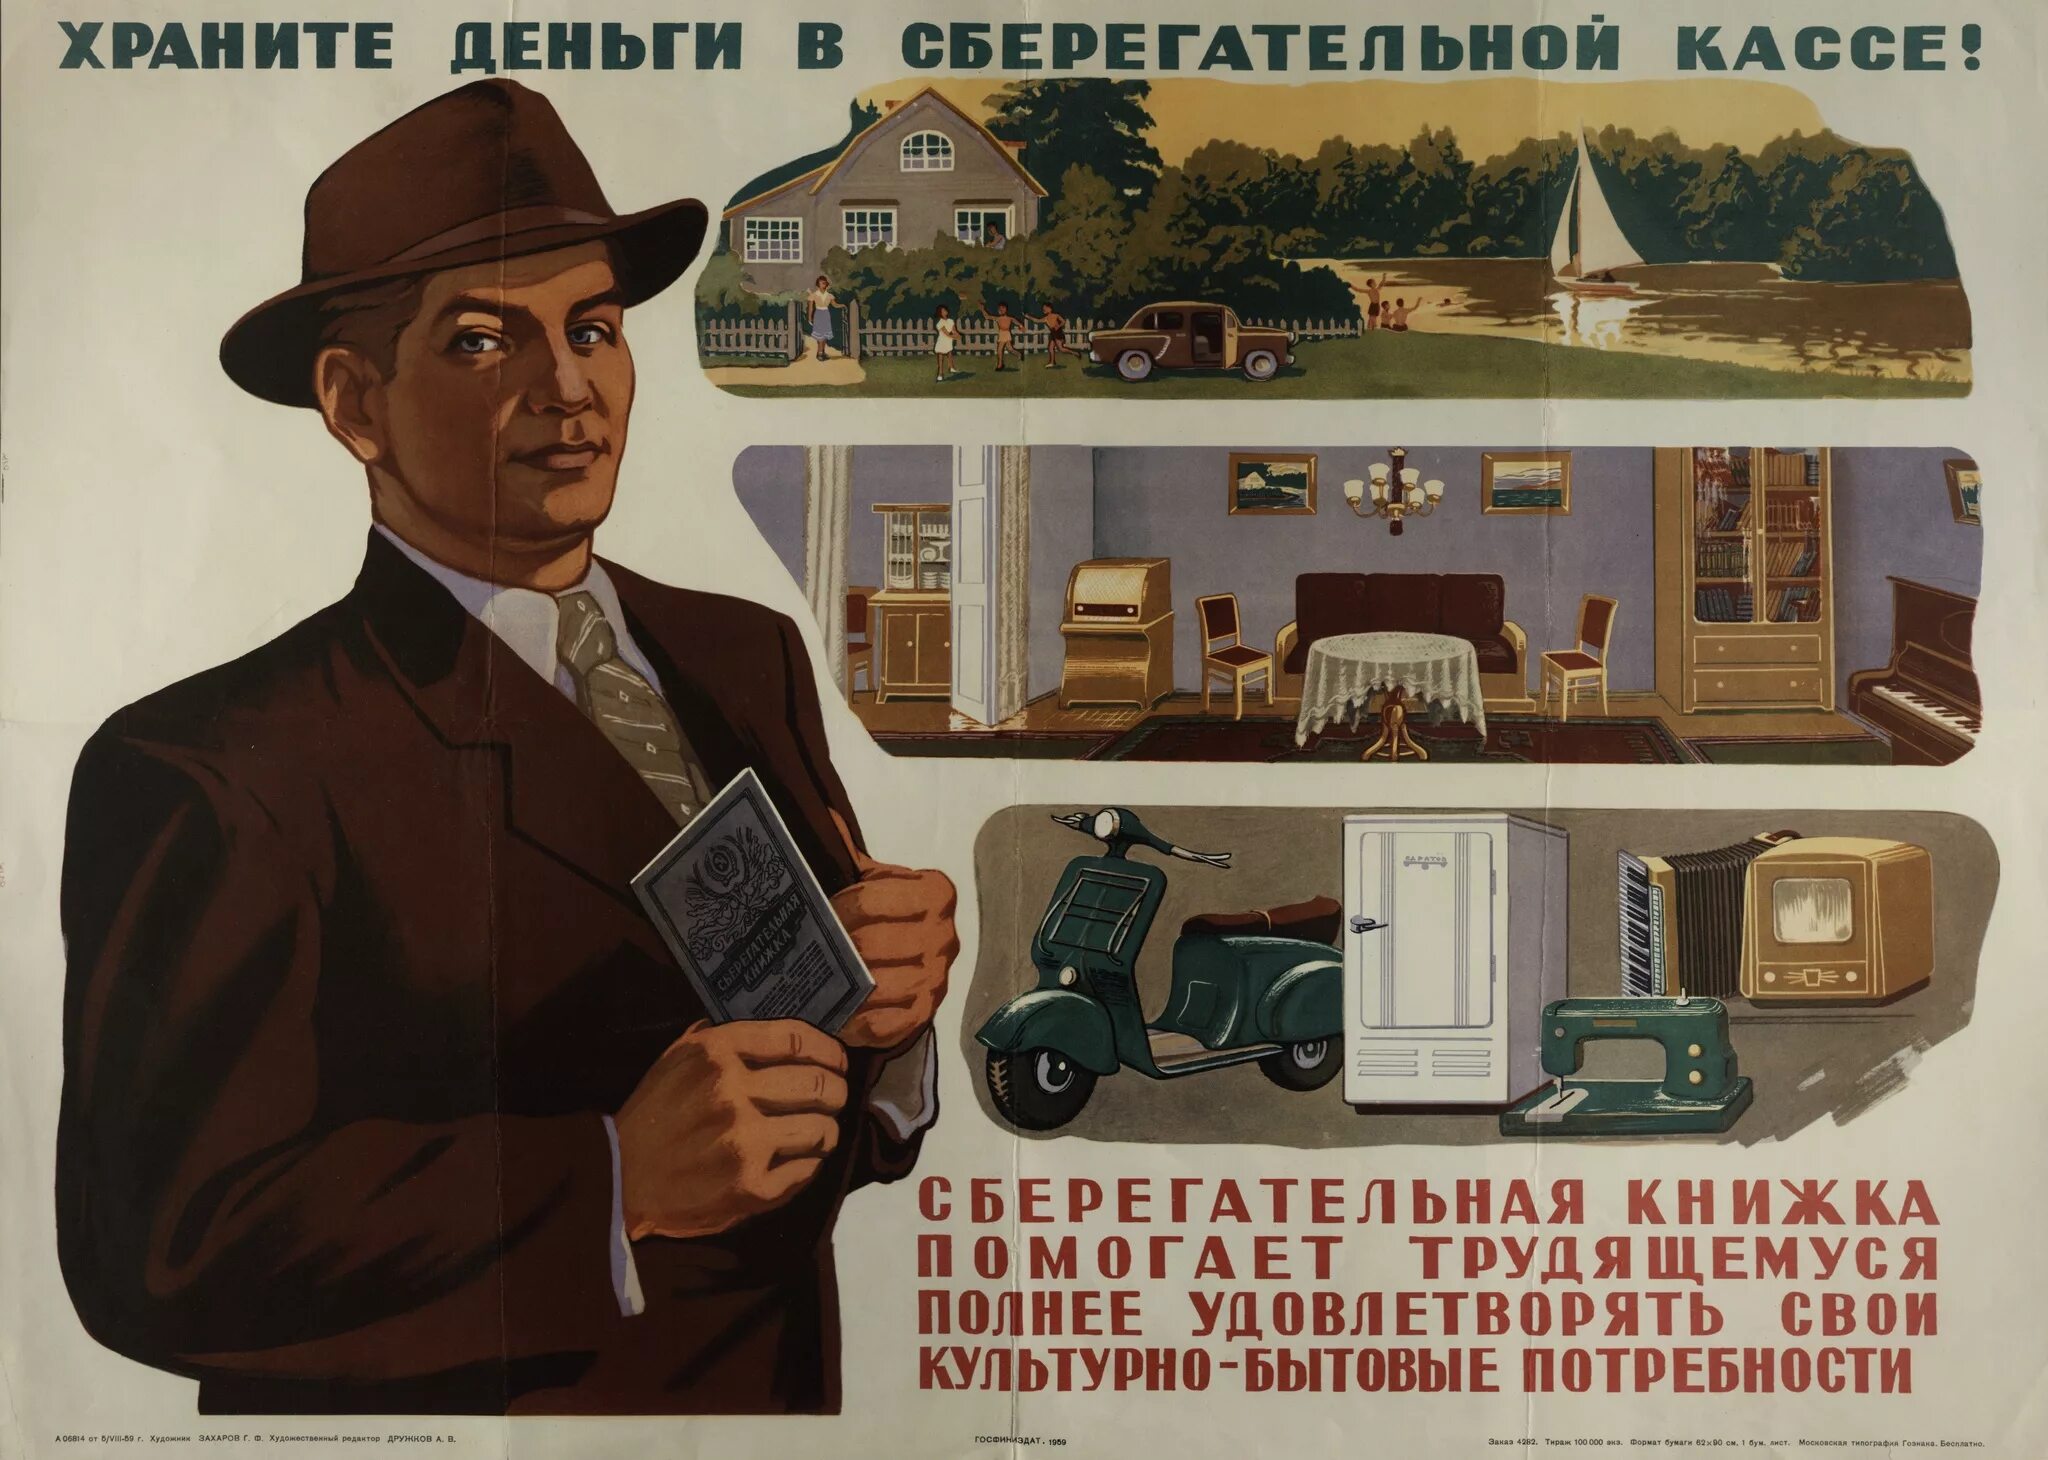 Сберкасса плакат СССР. Храните деньги в сберегательной кассе плакат. Советские плакаты про деньги. Храните деньги в сберегательной кассе.